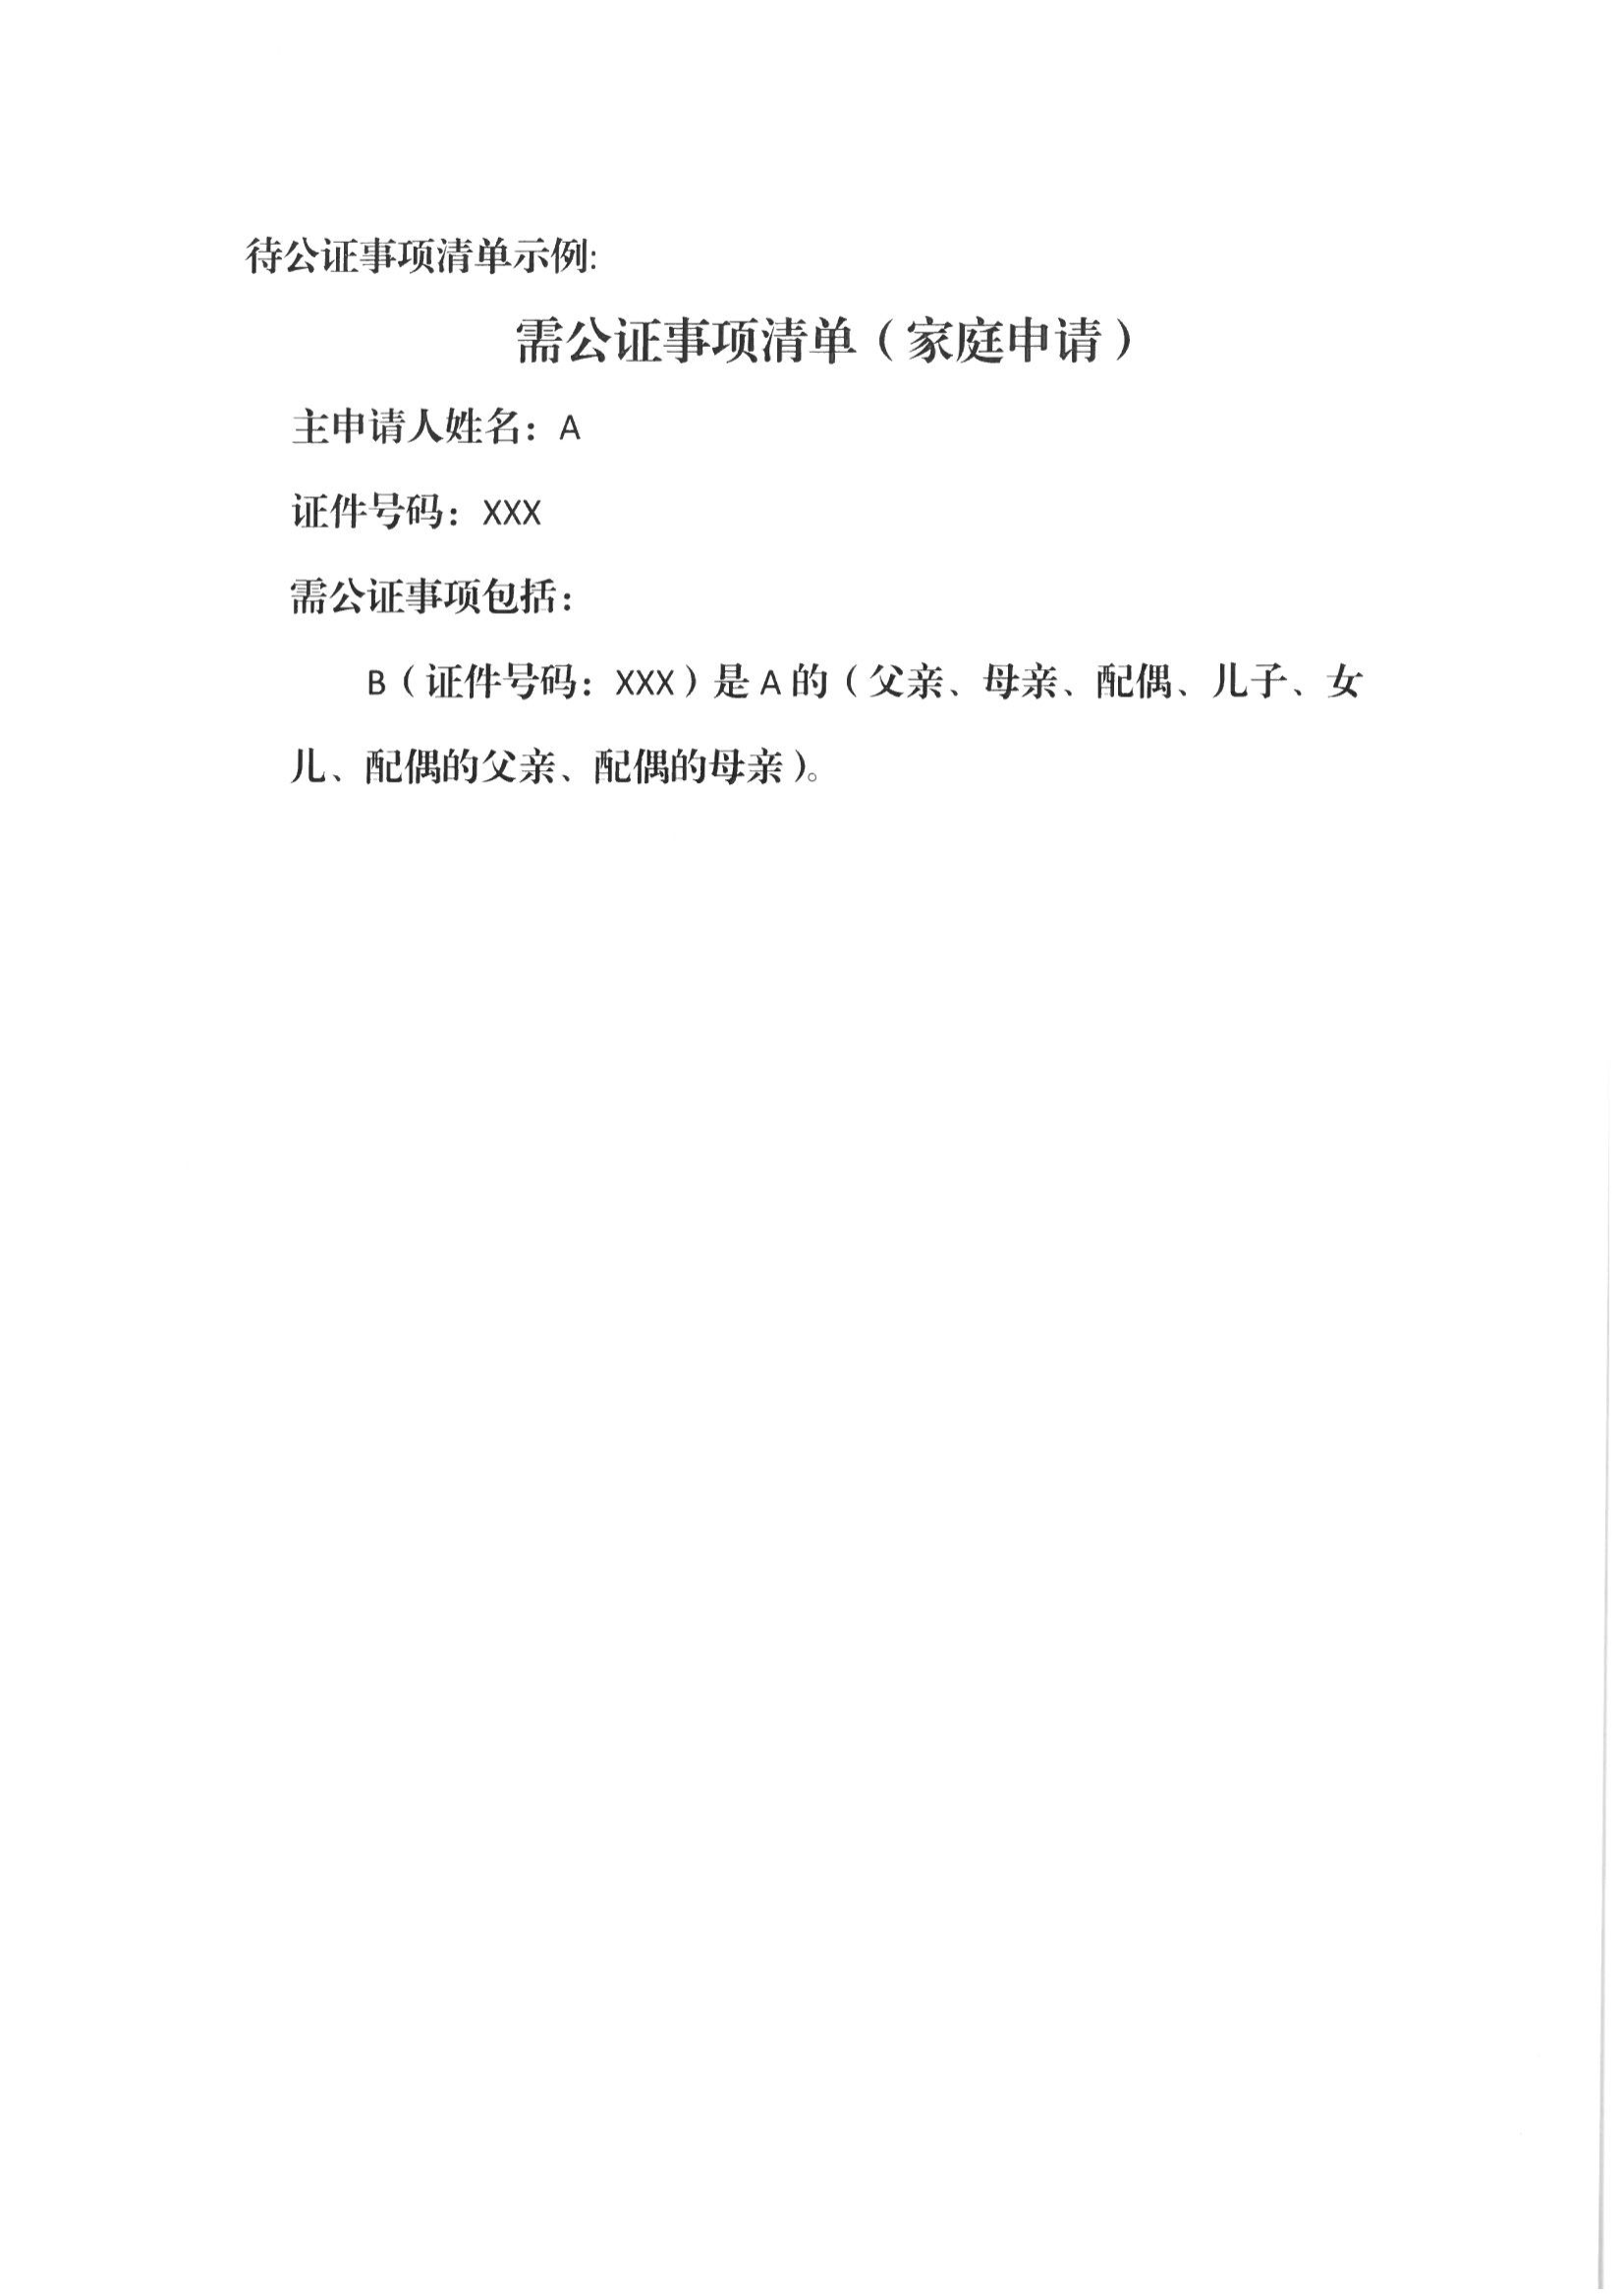 13、北京市公证协会关于印发《北京市公证协会规范执业指引》第13号的通知_47